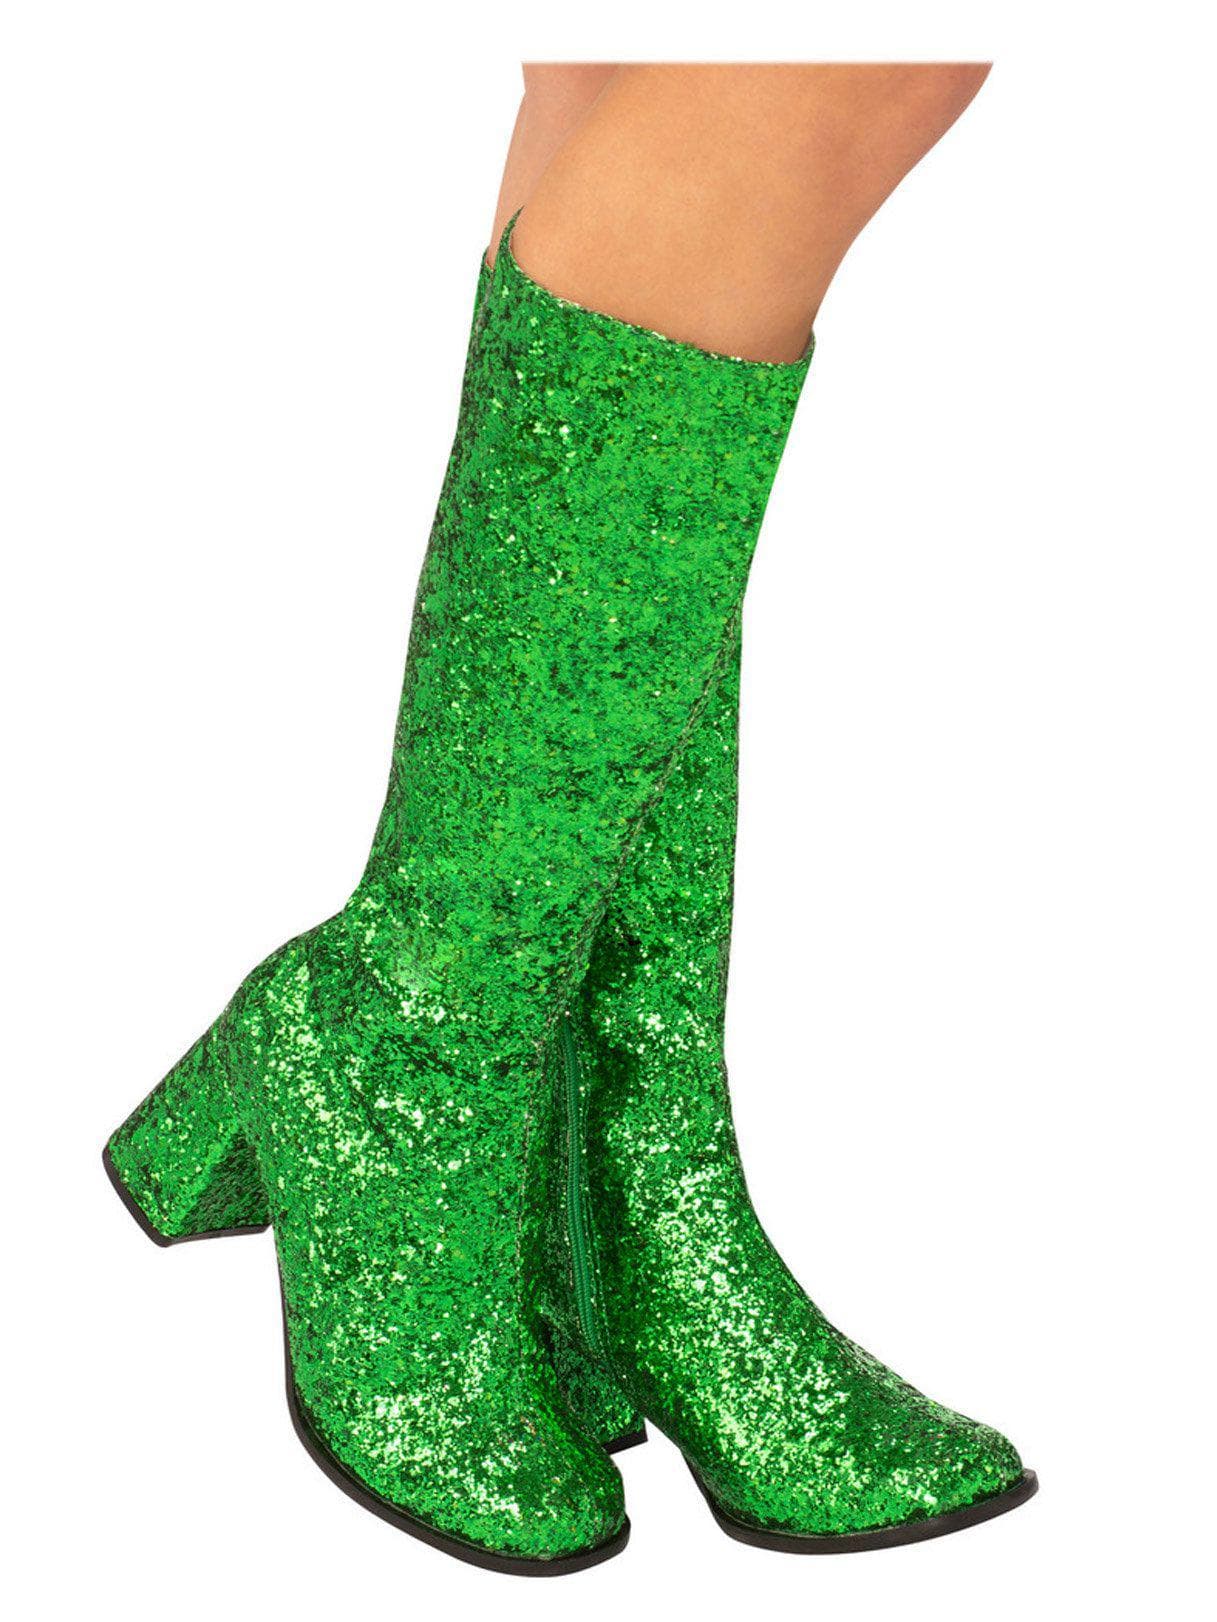 Adult Green Glitter Go Go Disco Boots - costumes.com